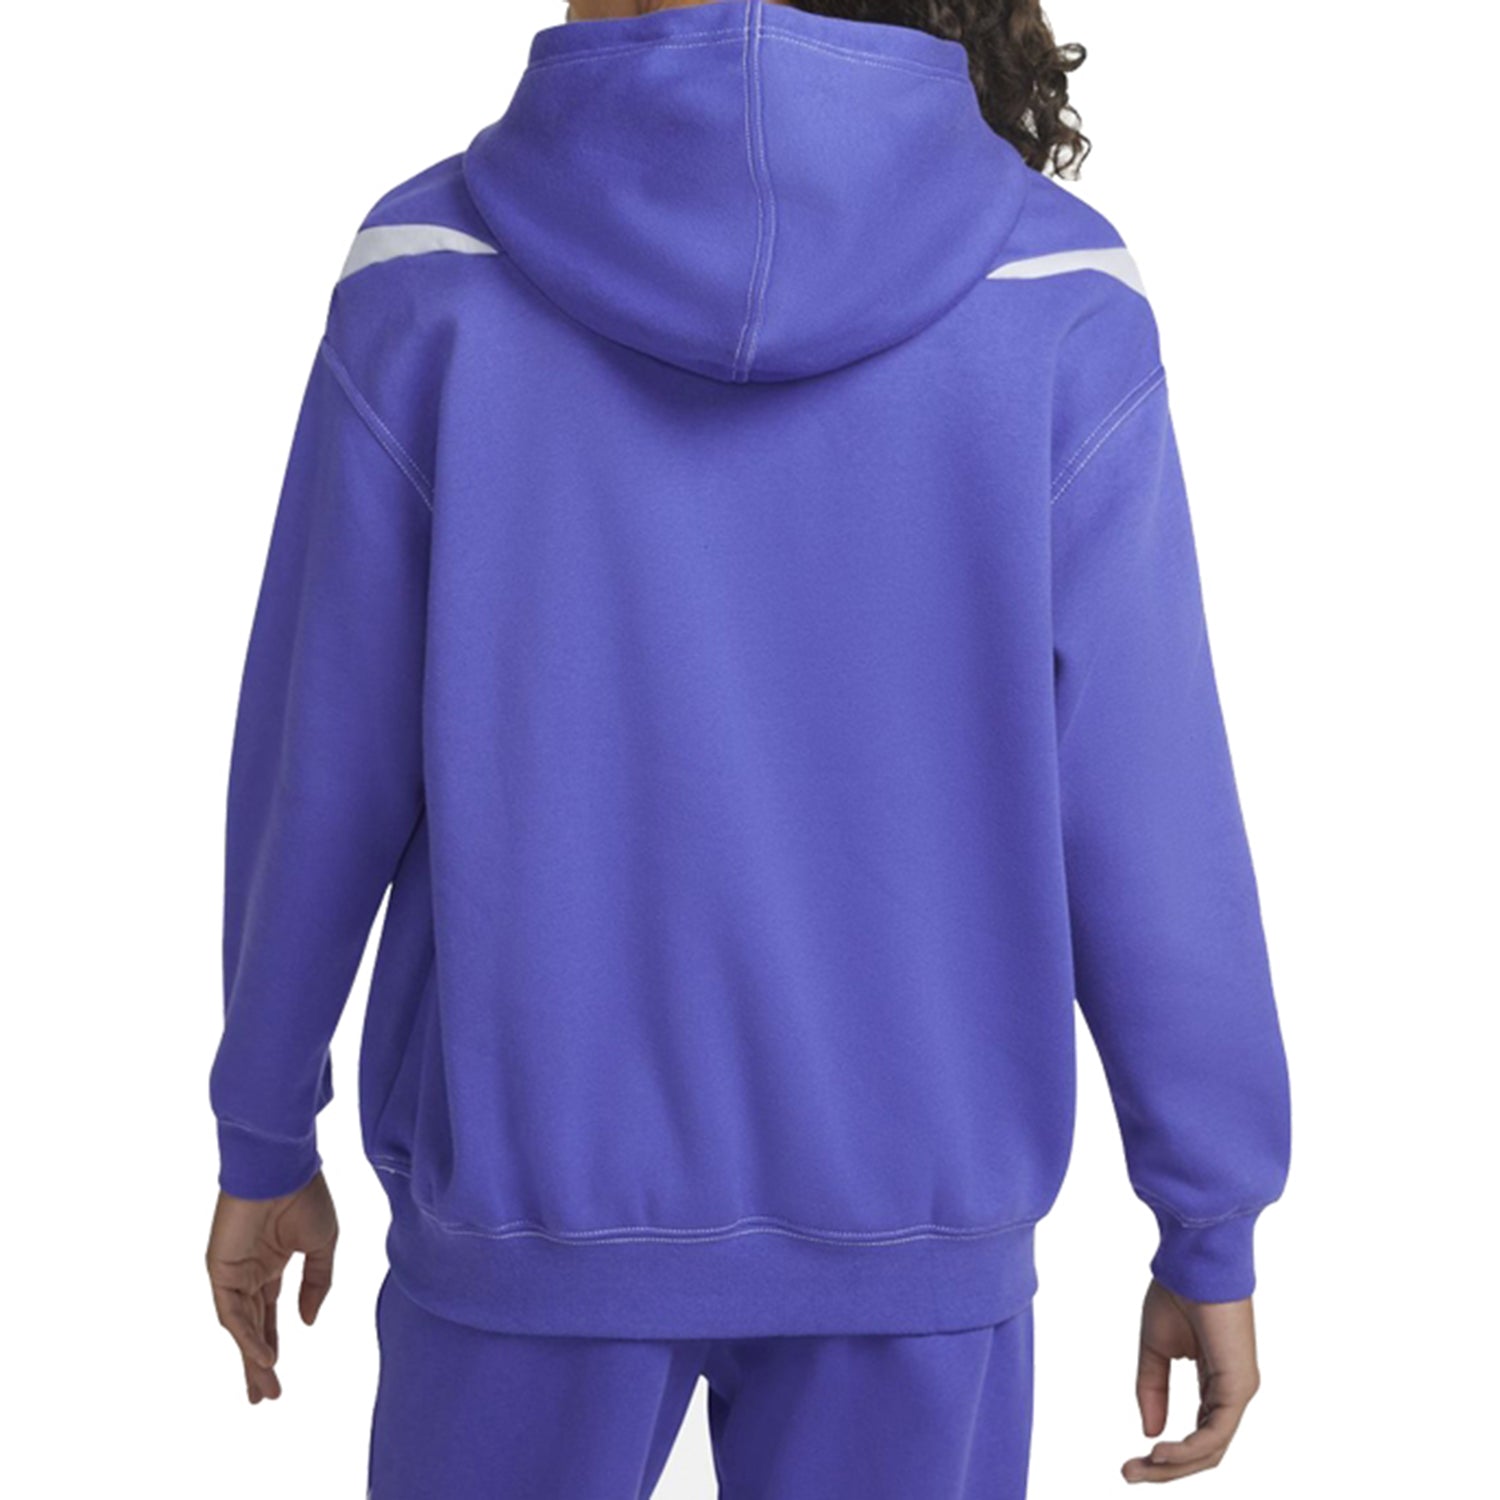 Nike Sportswear Swoosh Oversized Fleece Hoodie Womens Style : Dd5580